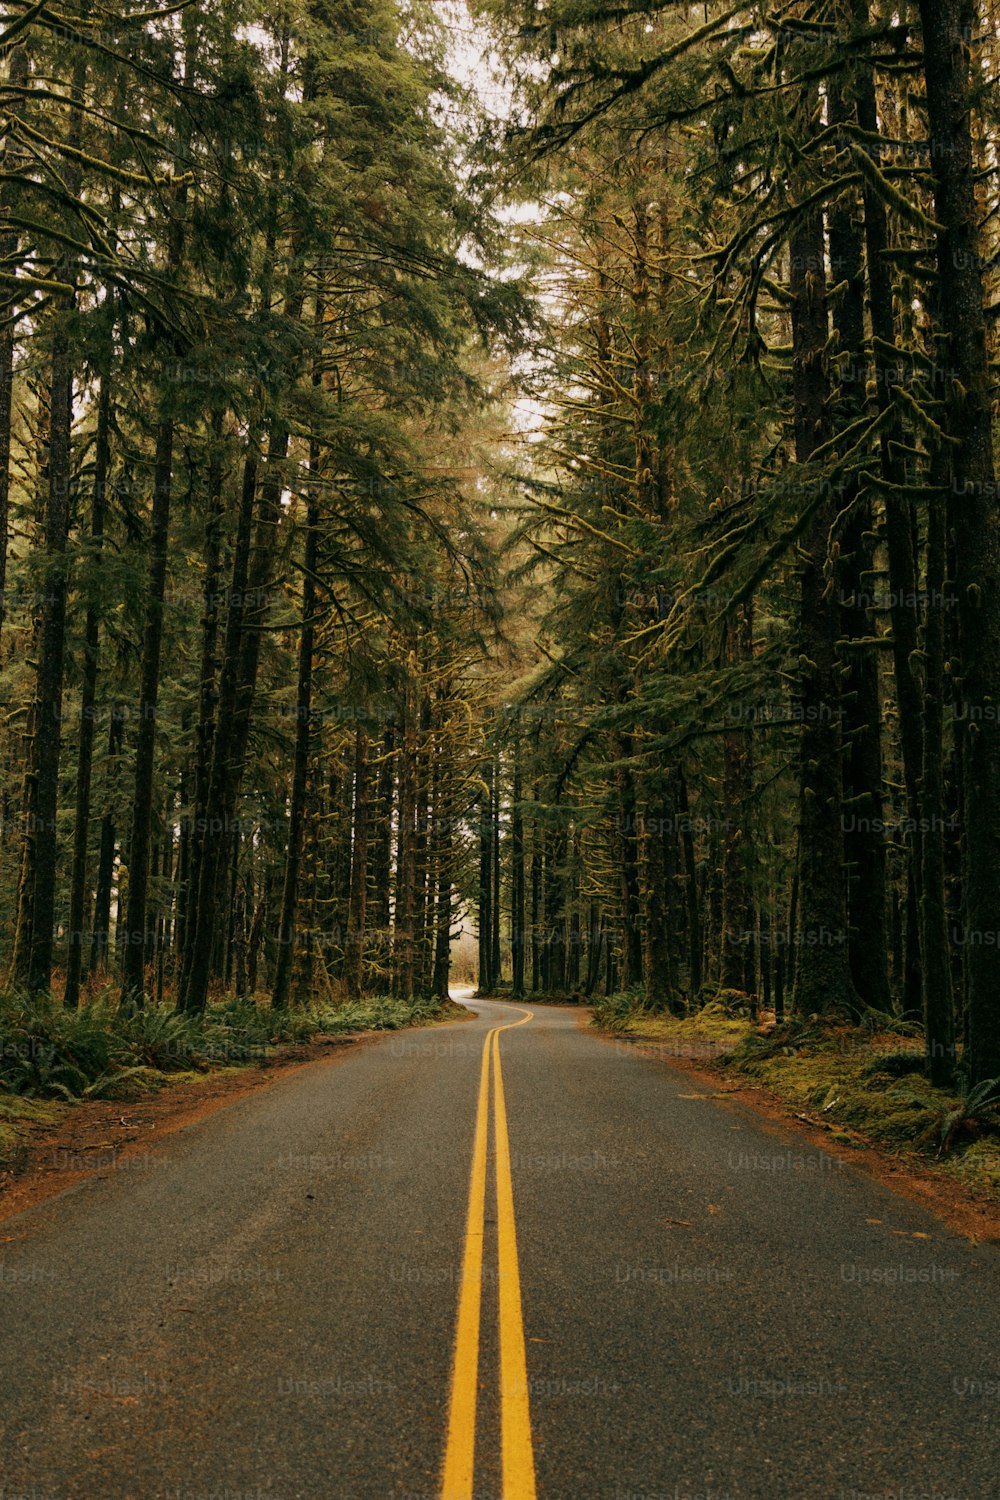 Un camino en medio de un bosque bordeado de árboles altos